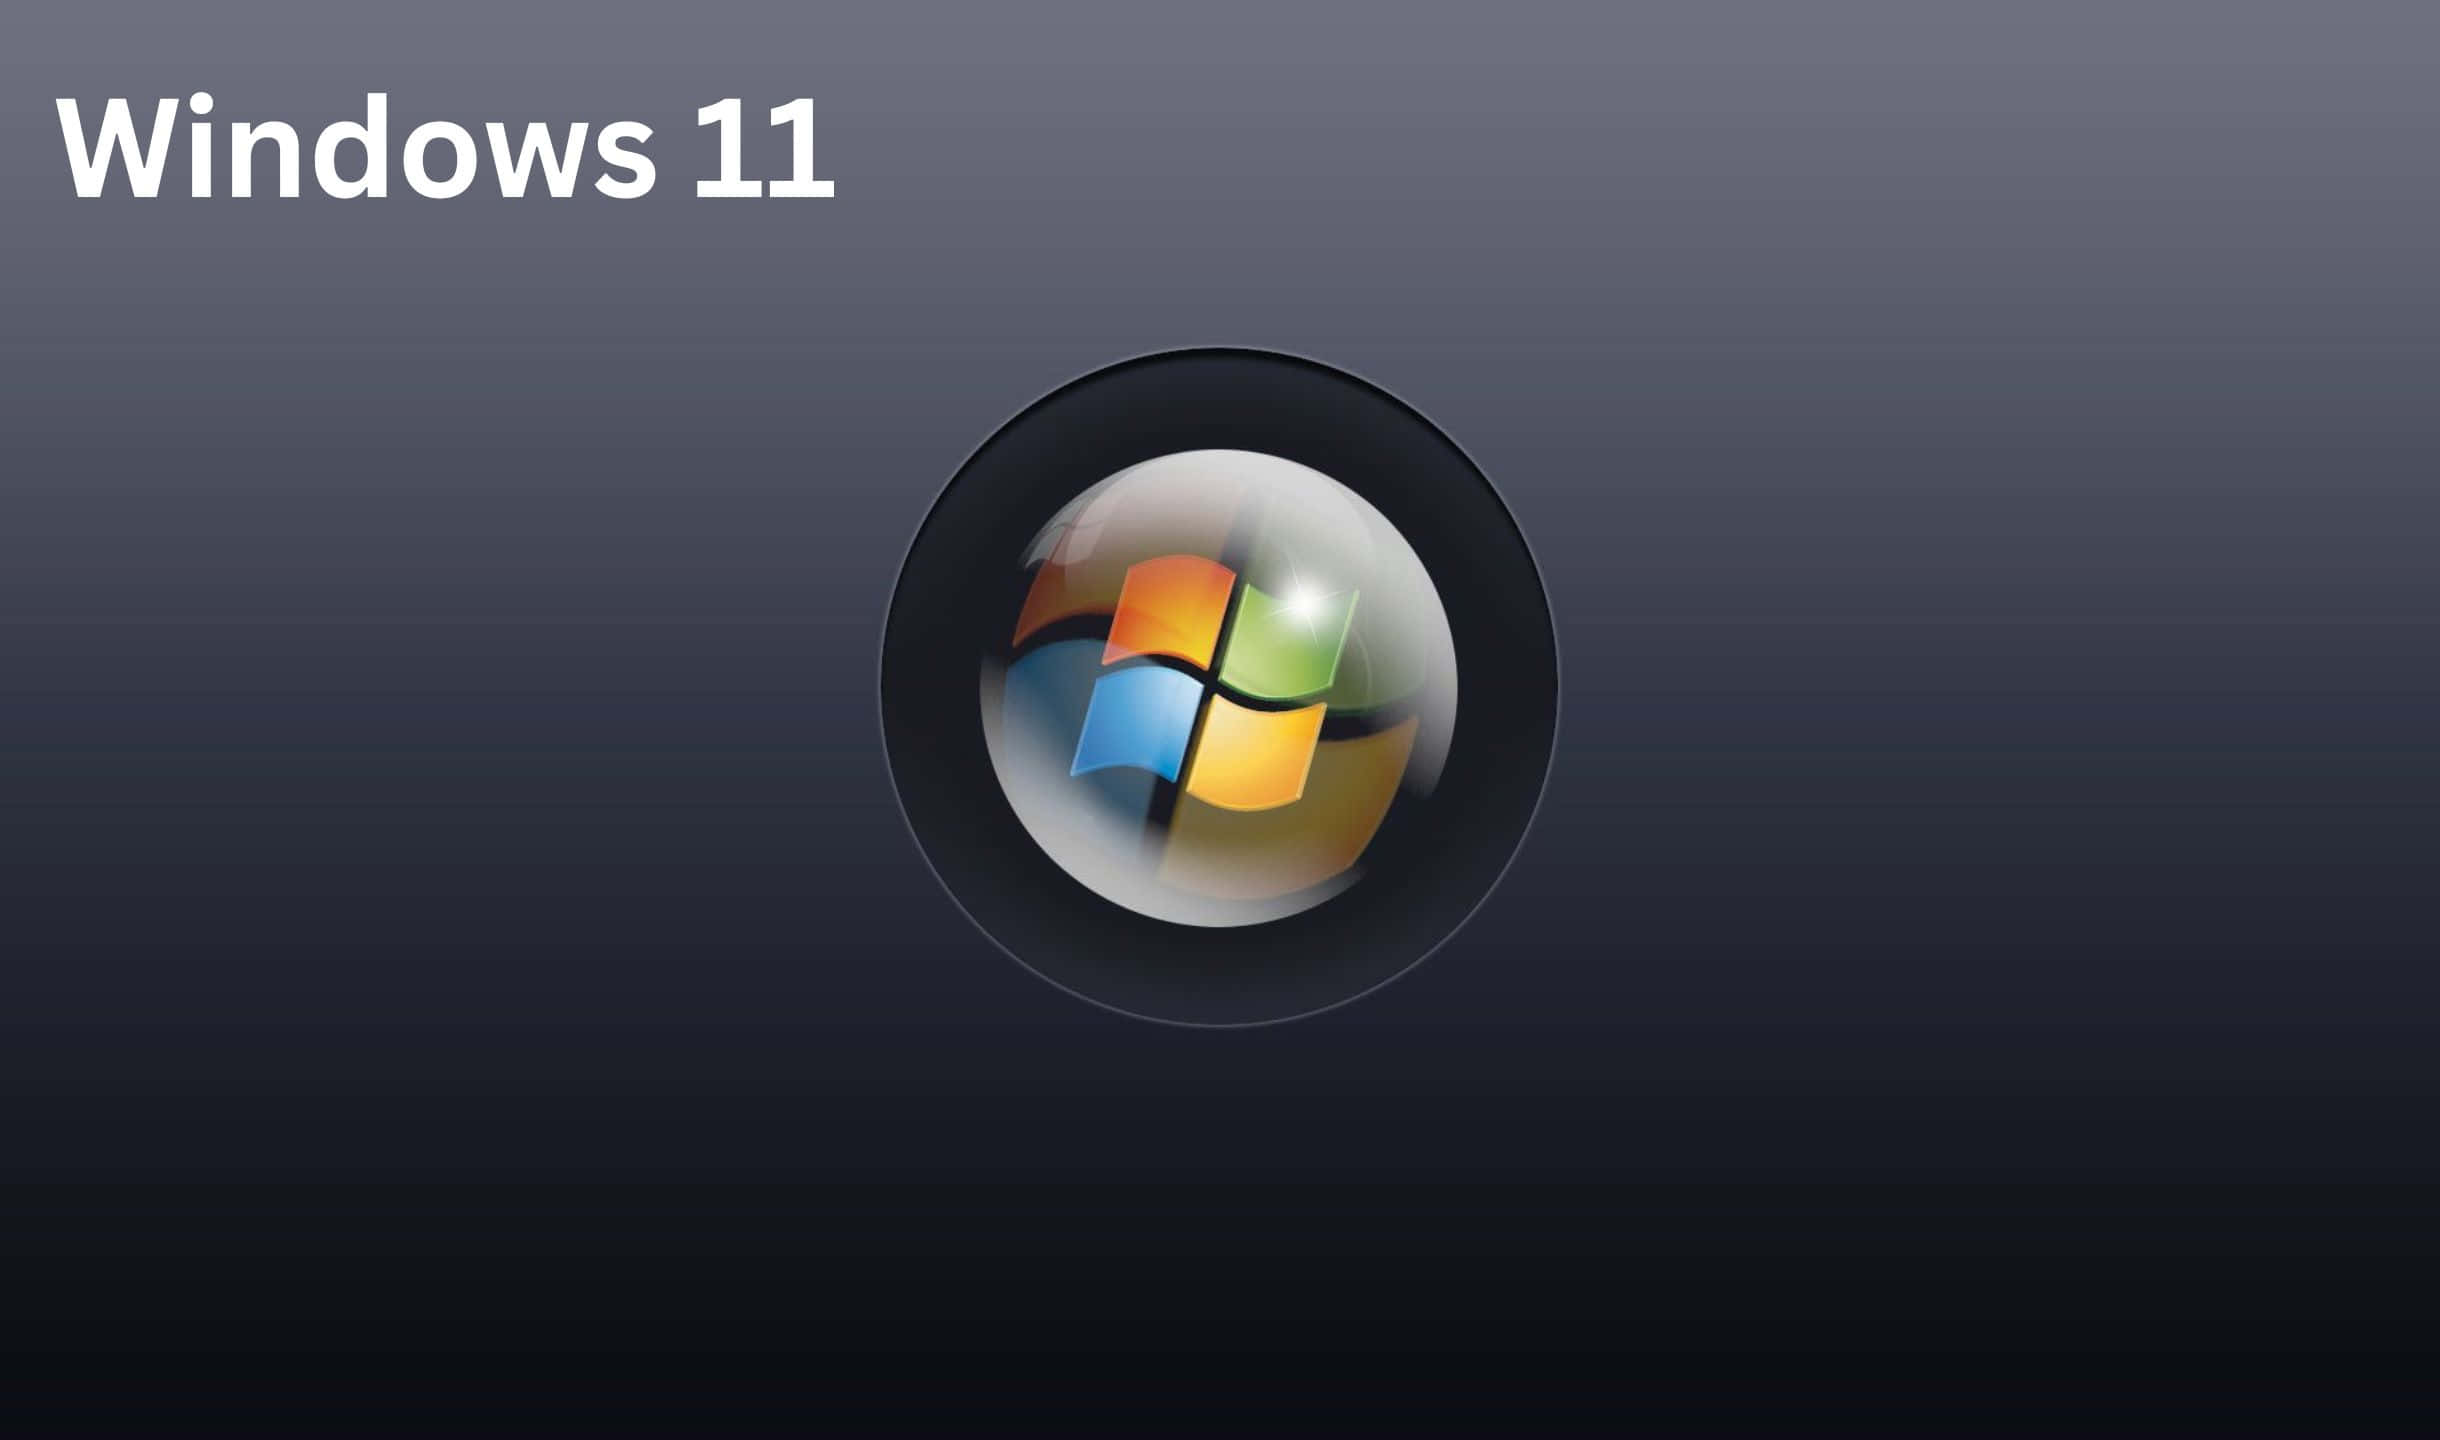 Upplevden Förbättrade Designen Med Den Senaste Versionen Av Windows.